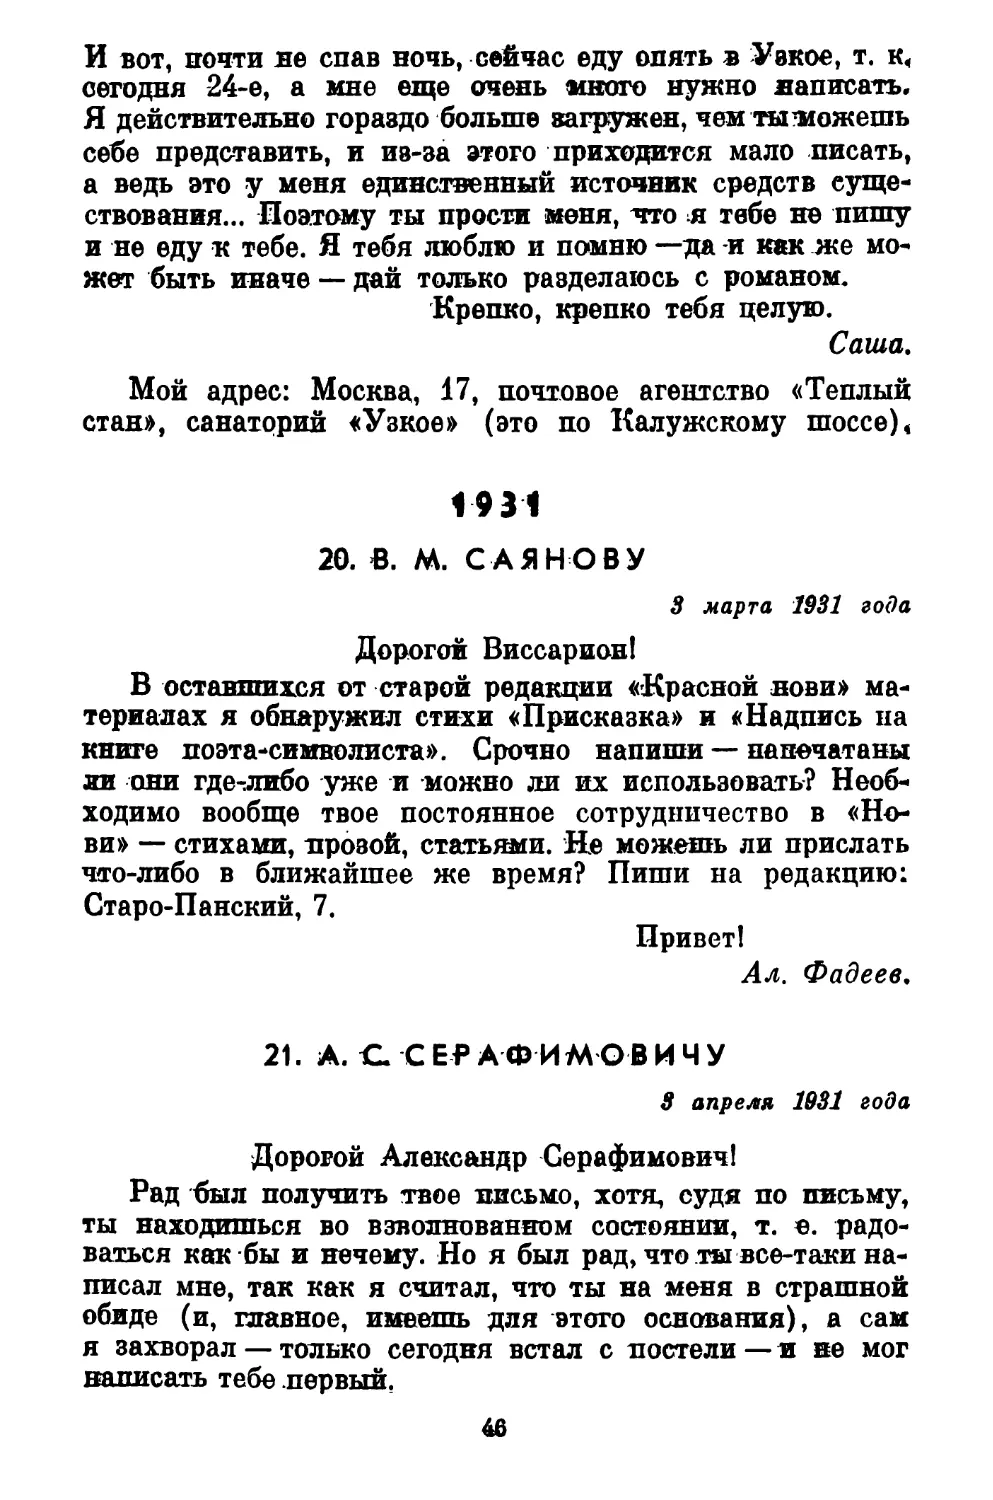 1931
21. А. С. СЕРАФИМОВИЧУ